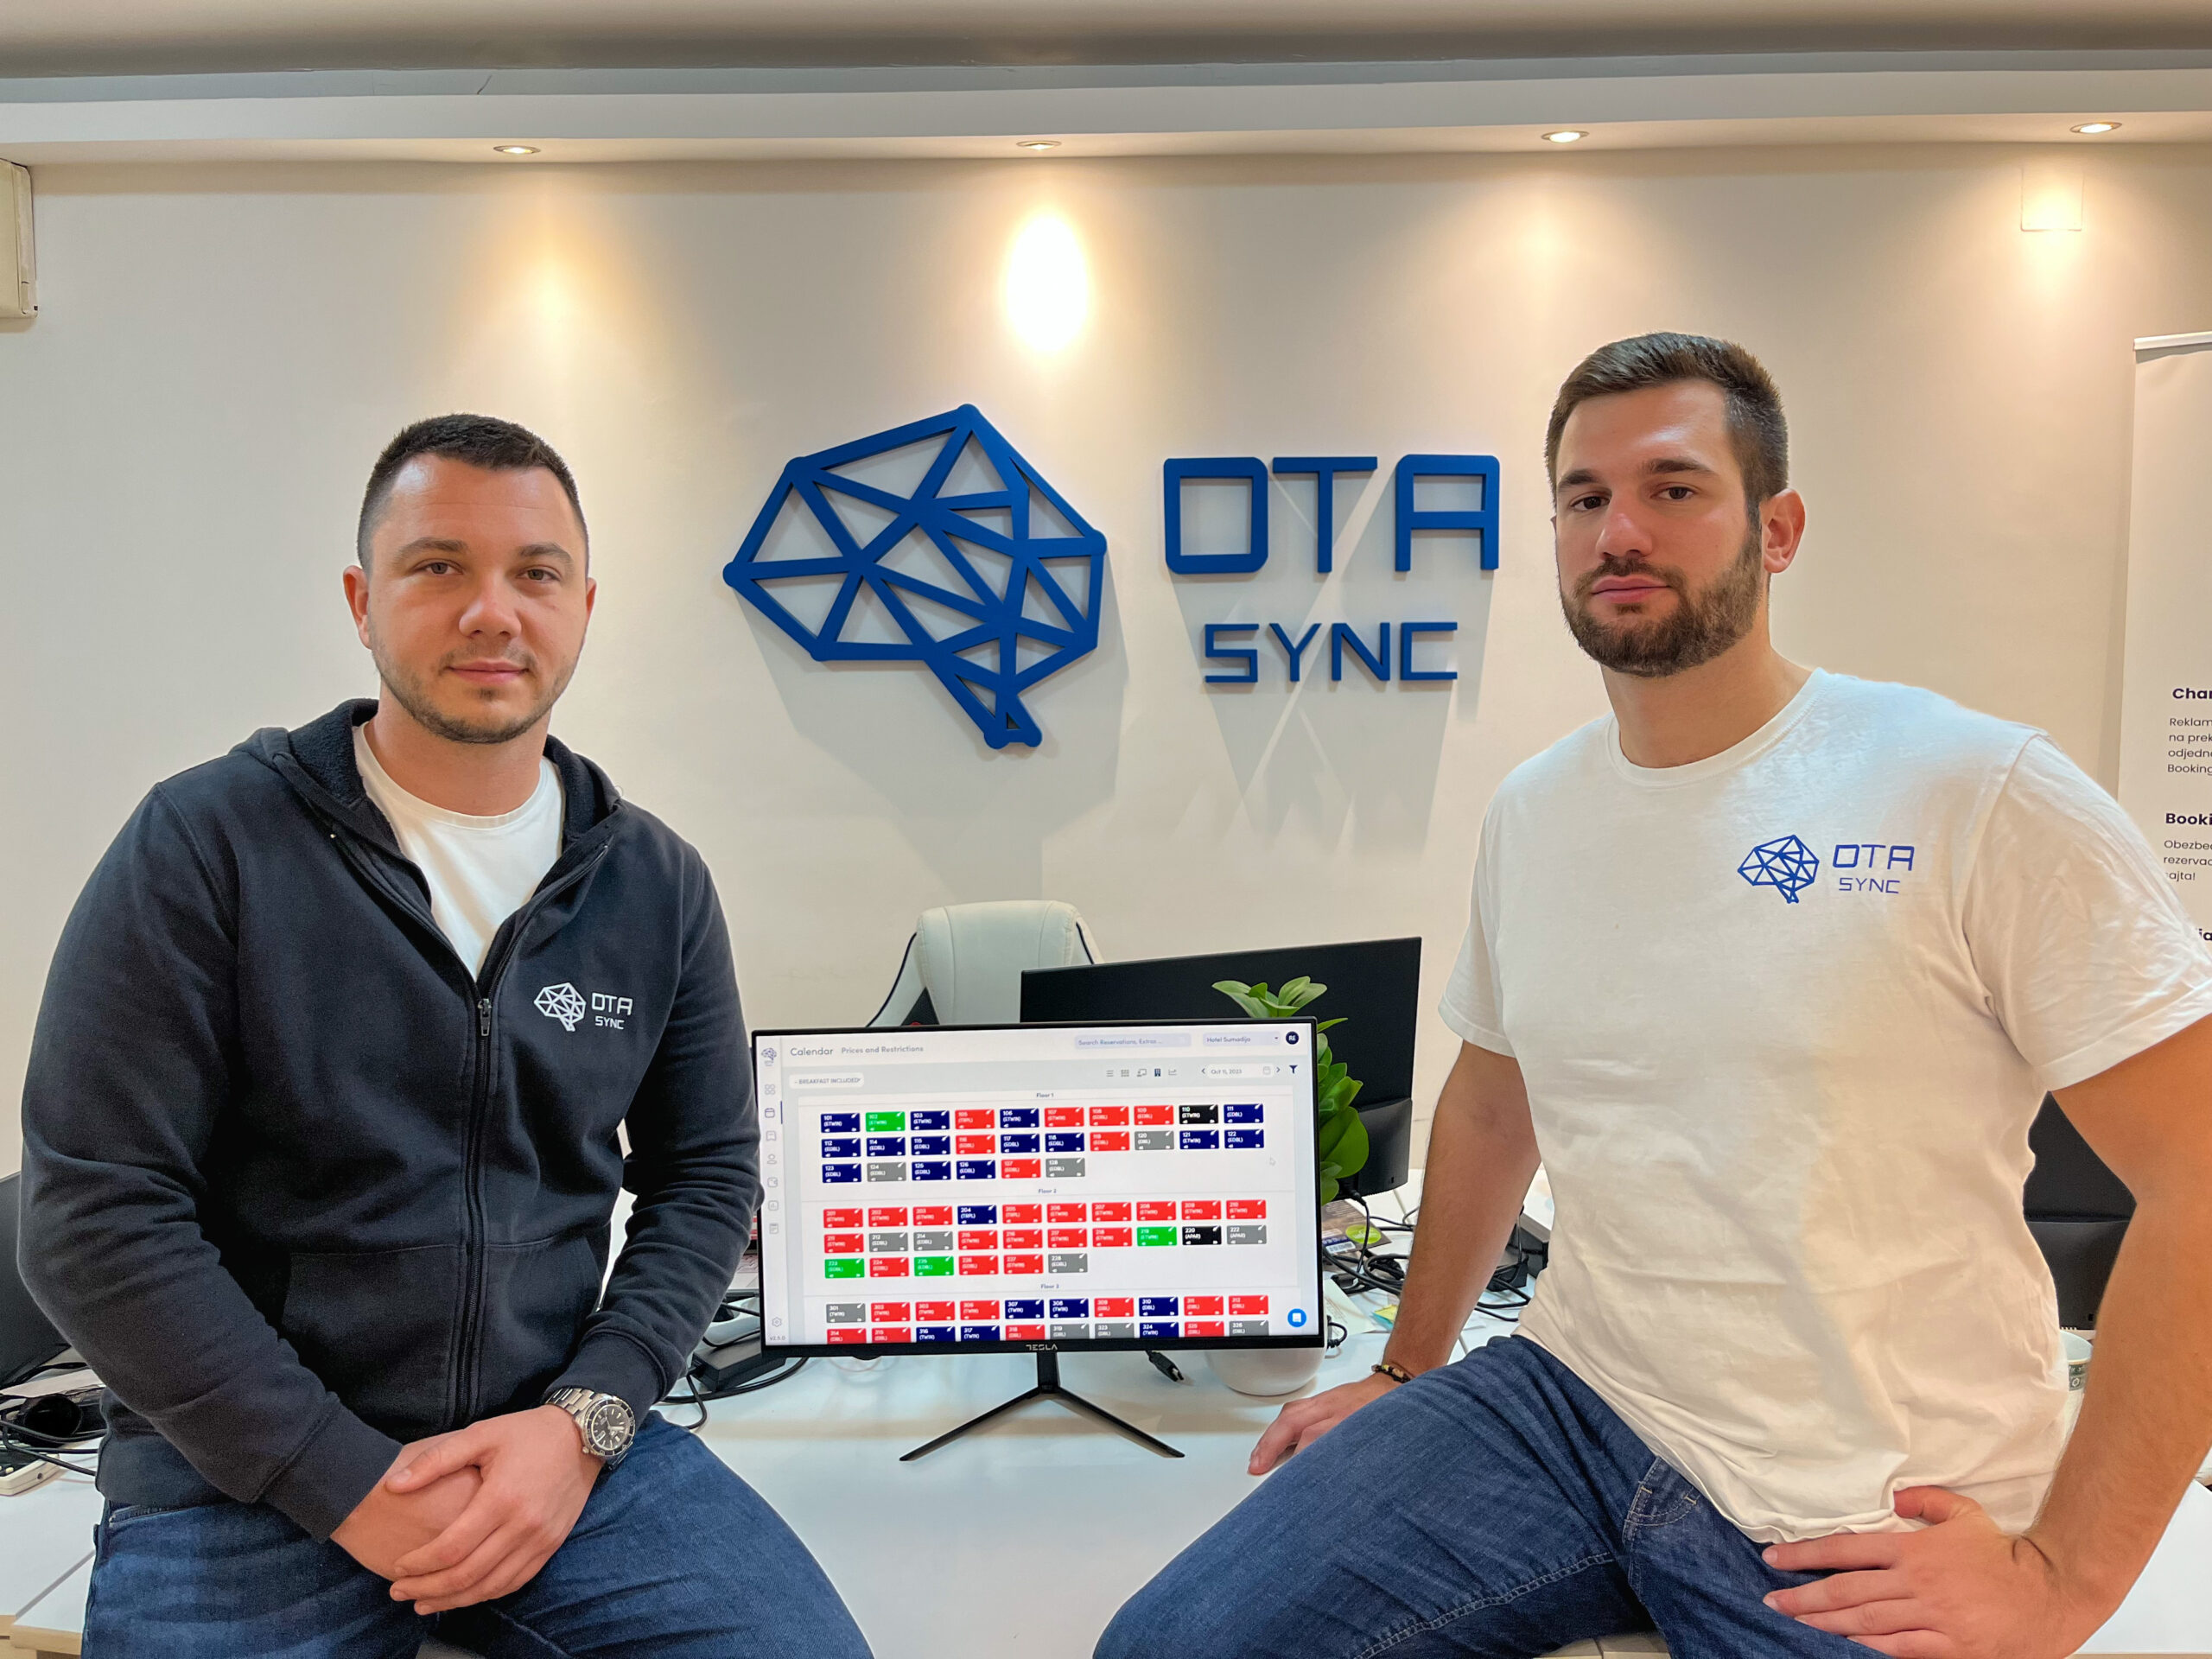 OTA Sync sta chiudendo un round di seed internazionale da 1.3 milioni di euro guidato da Presto Ventures